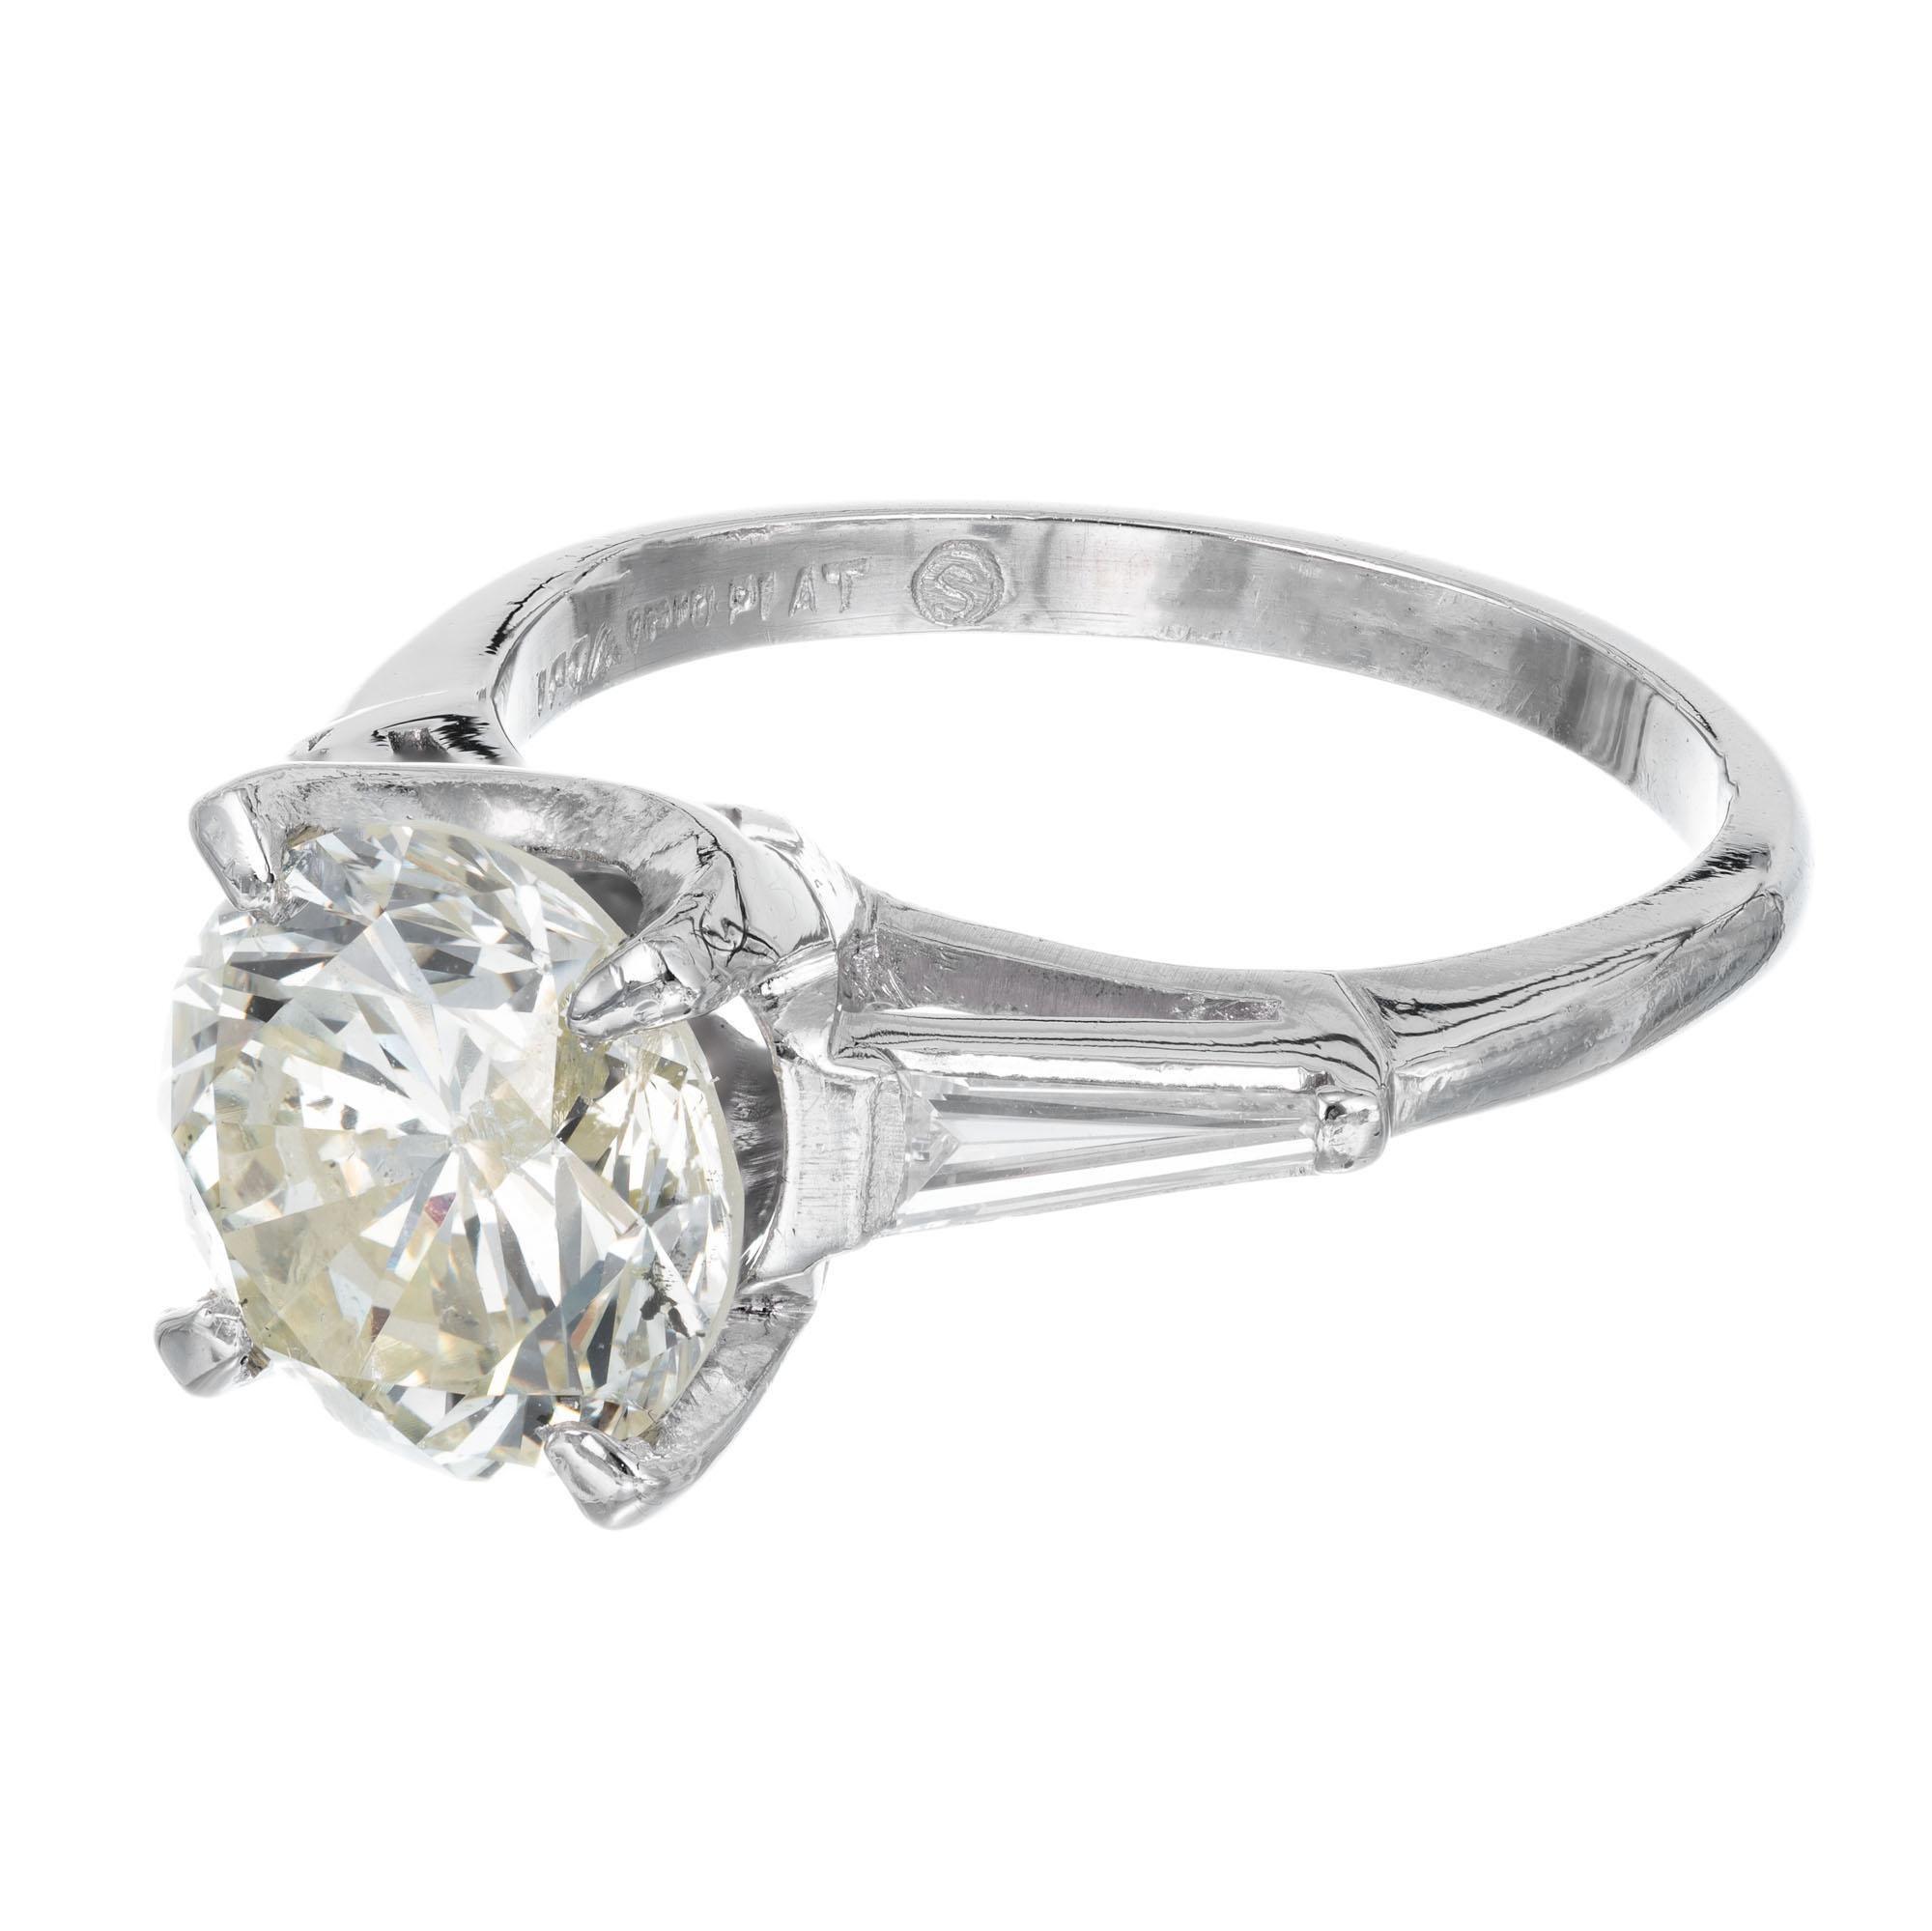 2.53 carat diamond ring price